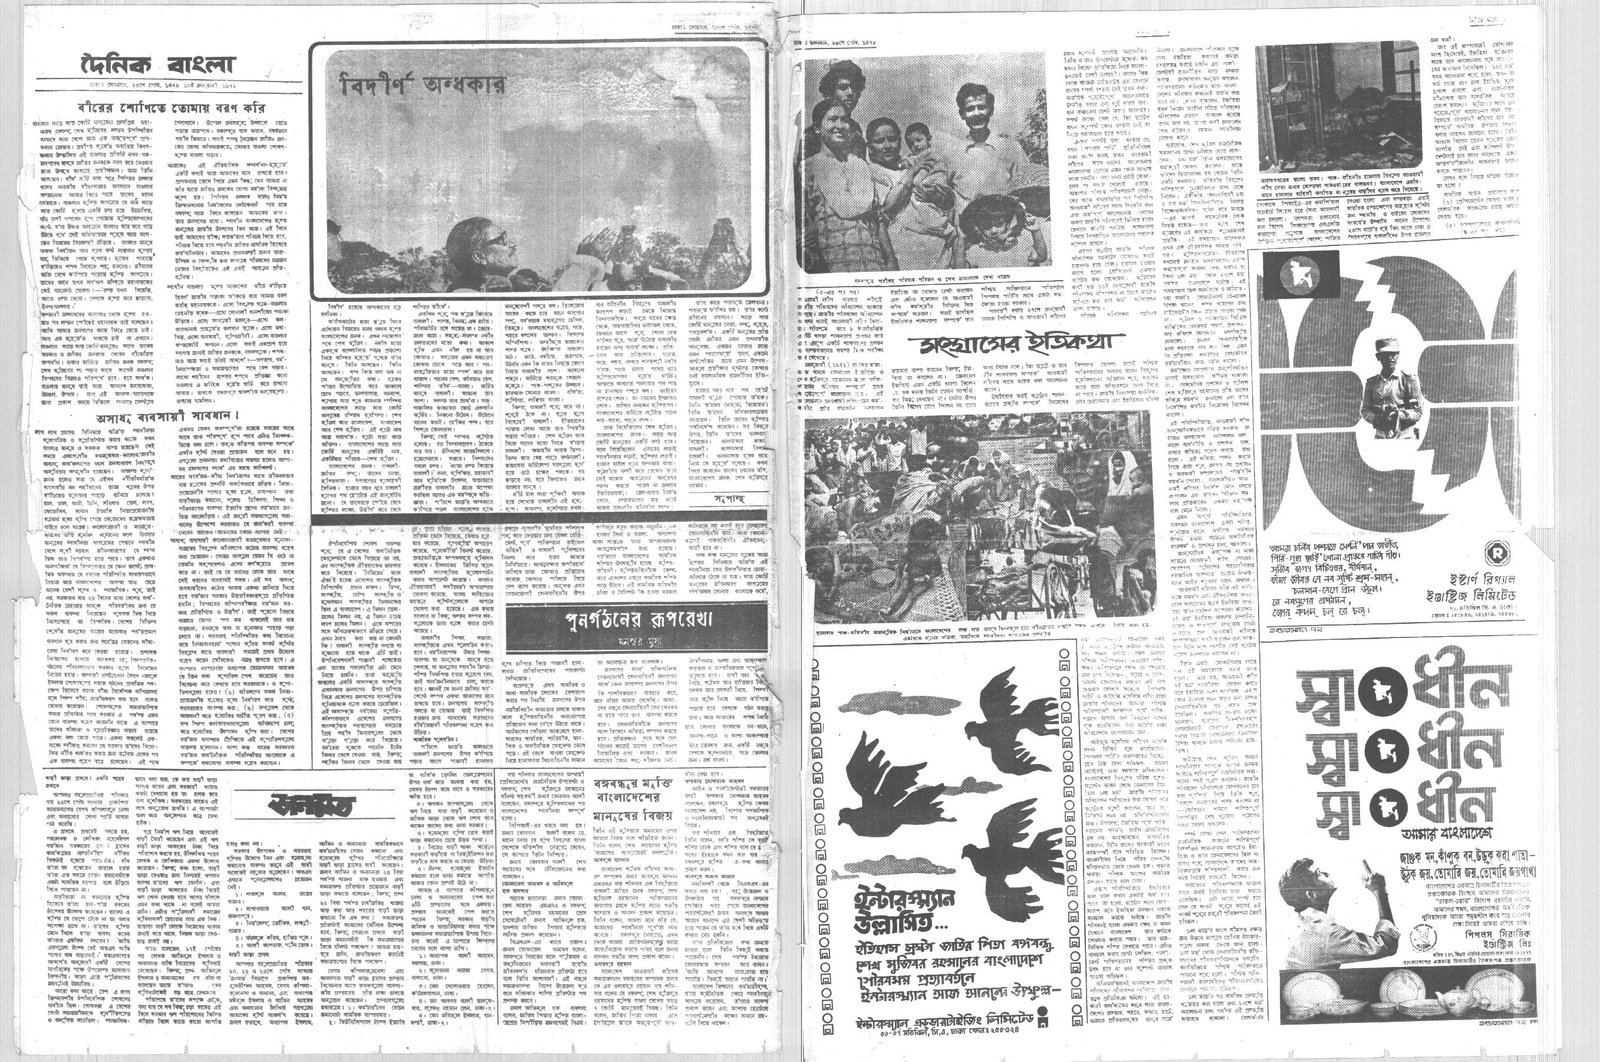 10JAN1972-DAINIK BANGLA-Regular-Page 2 and 7